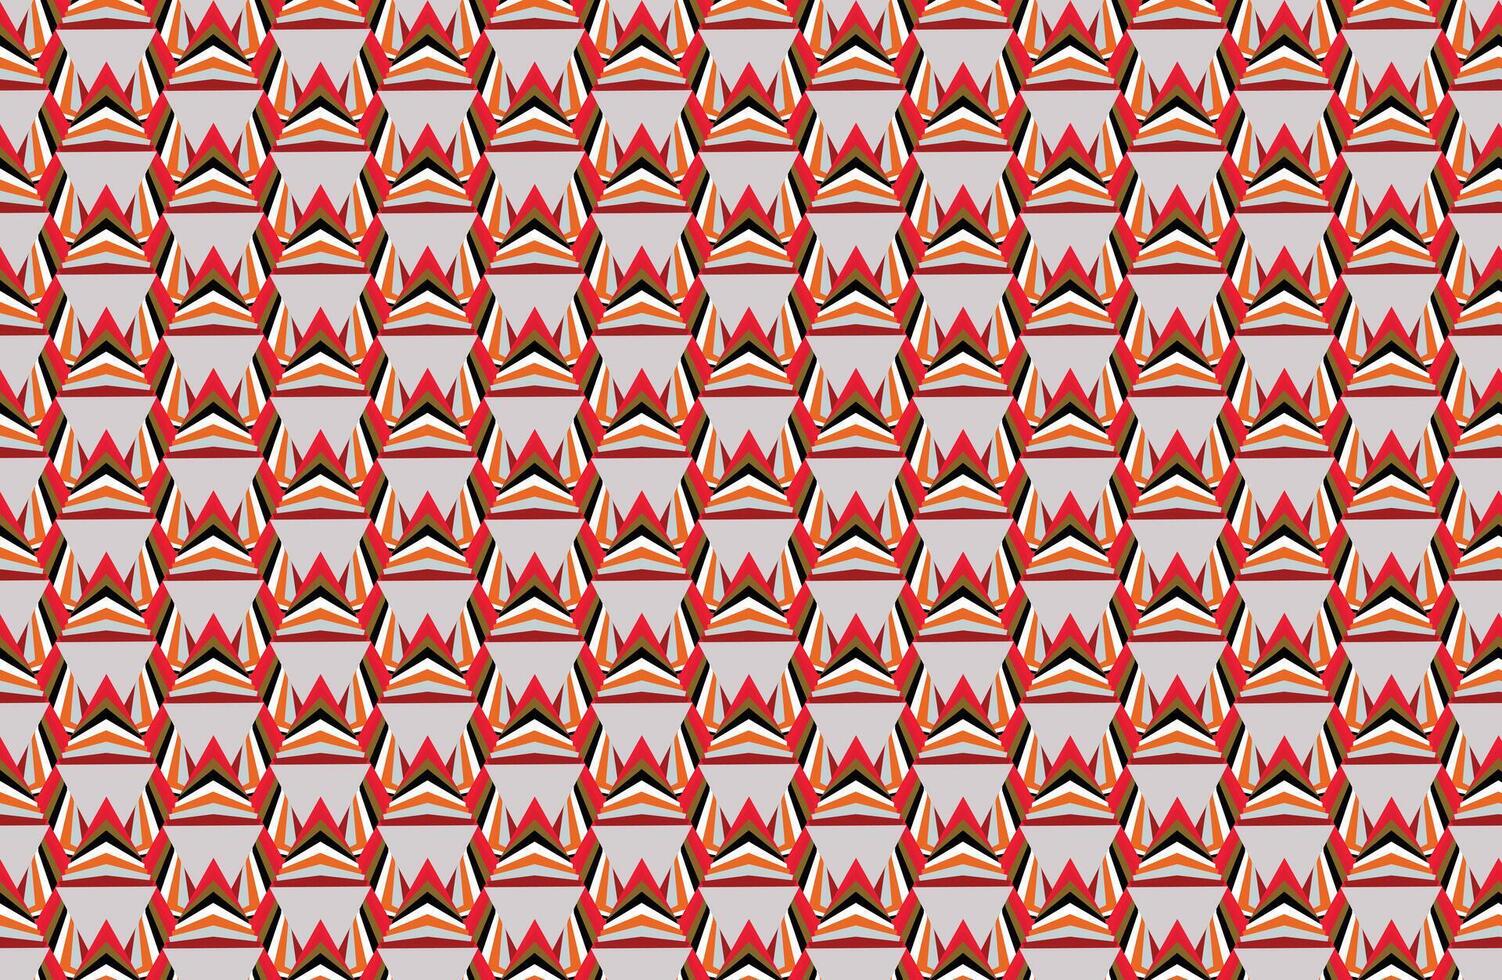 Illustration Hintergrund, Muster von Schicht Mehrfarbig im Dreieck auf grau Hintergrund. vektor